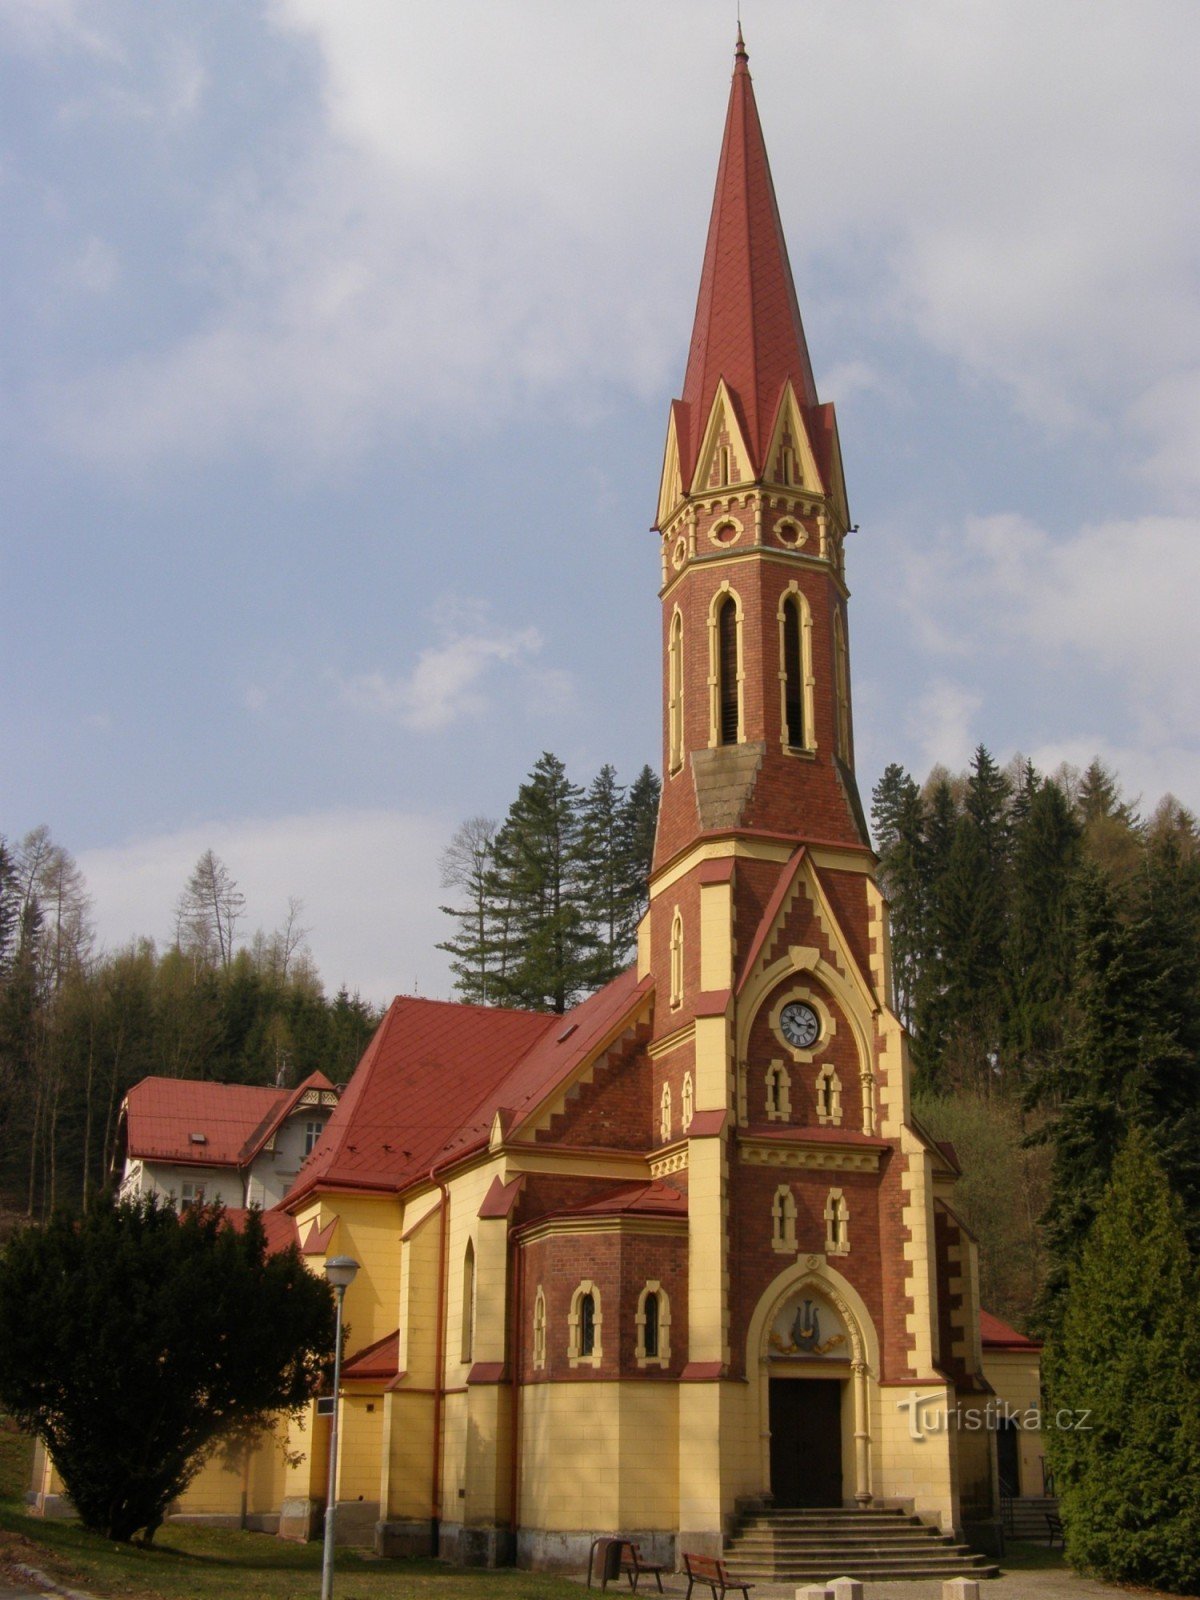 Trutnov - evangelische kerk, zaal van Bohuslav Martinů